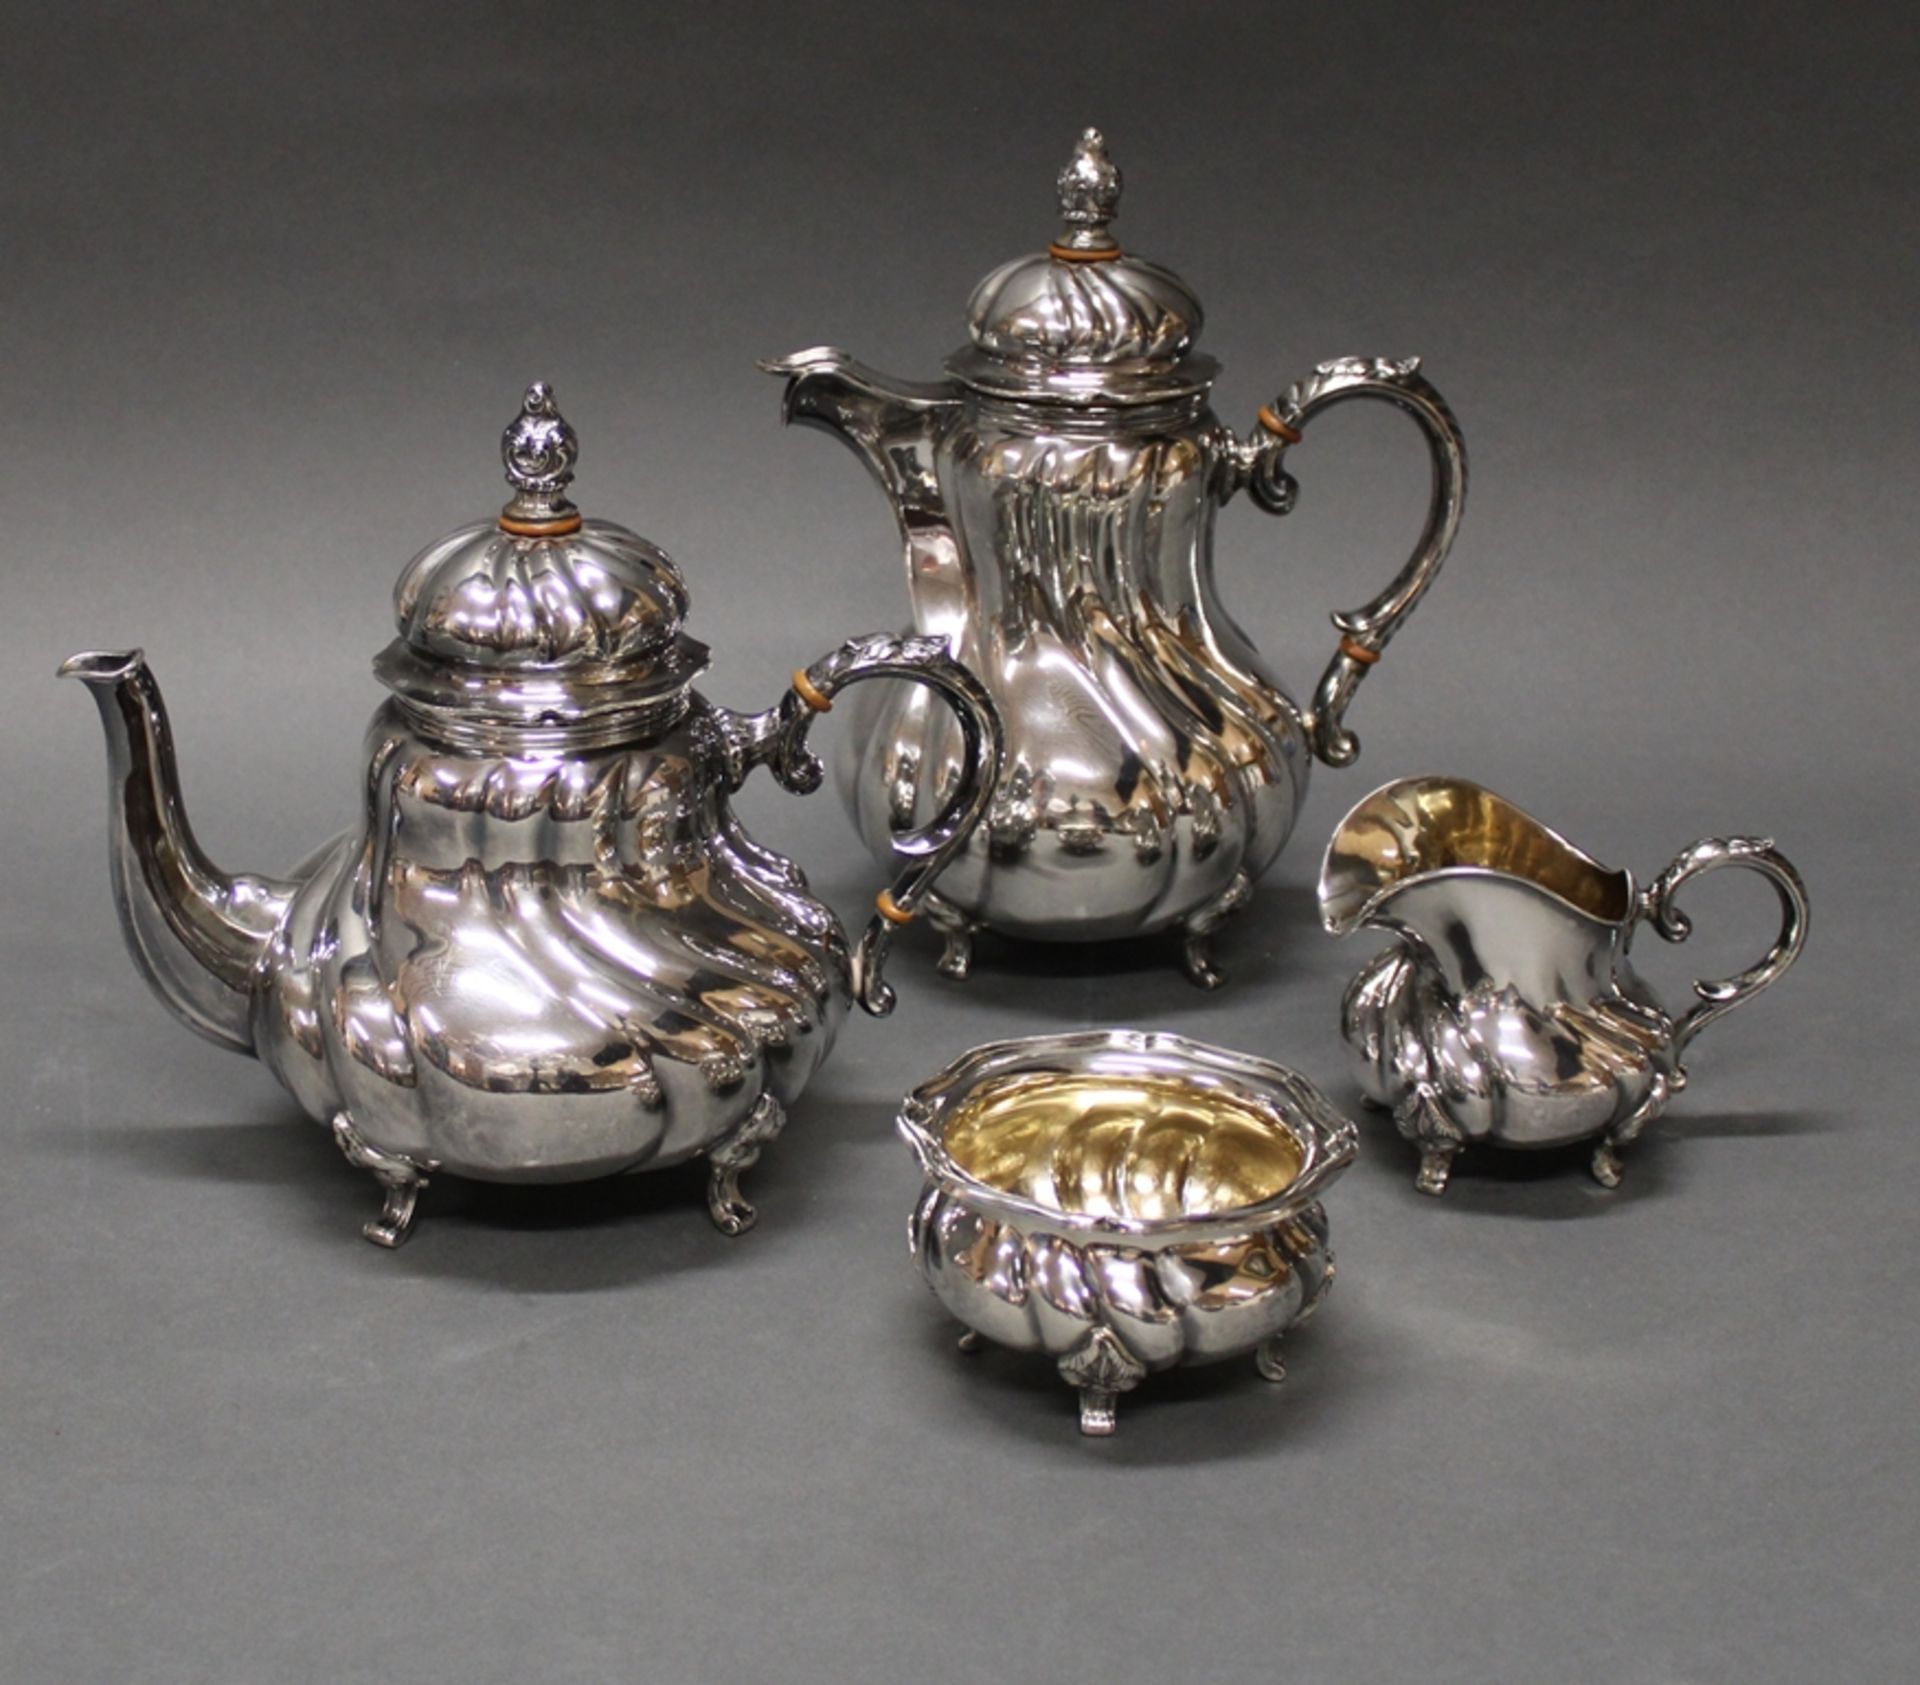 Kaffeekanne, Teekanne, Sahnegießer, Zuckerschale, Silber 800, deutsch, teils innen vergoldet, bauch